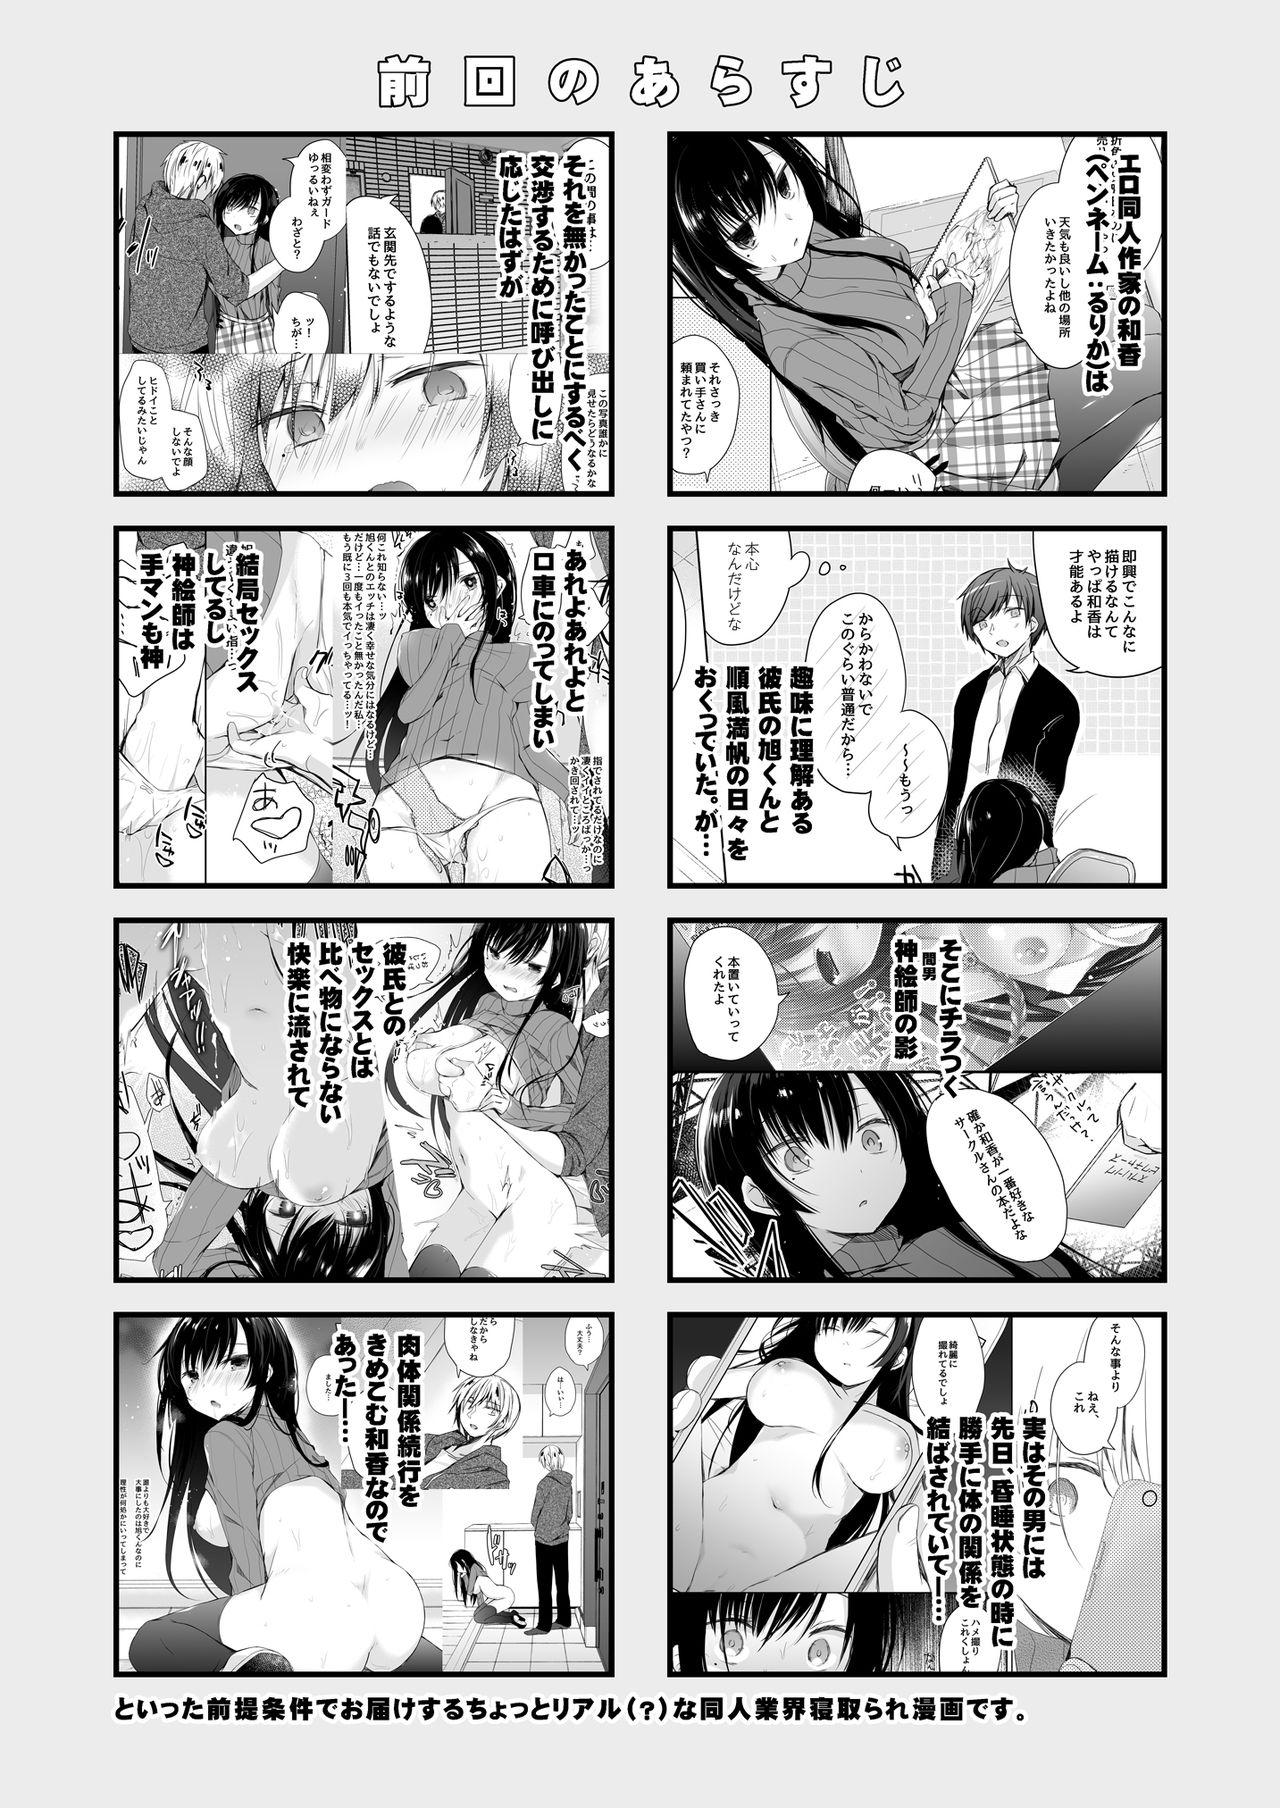 Threesome Ero Doujin Sakka no Boku no Kanojo wa Uwaki nante Shinai. 2 - She will never let me down. - Original Boquete - Page 4